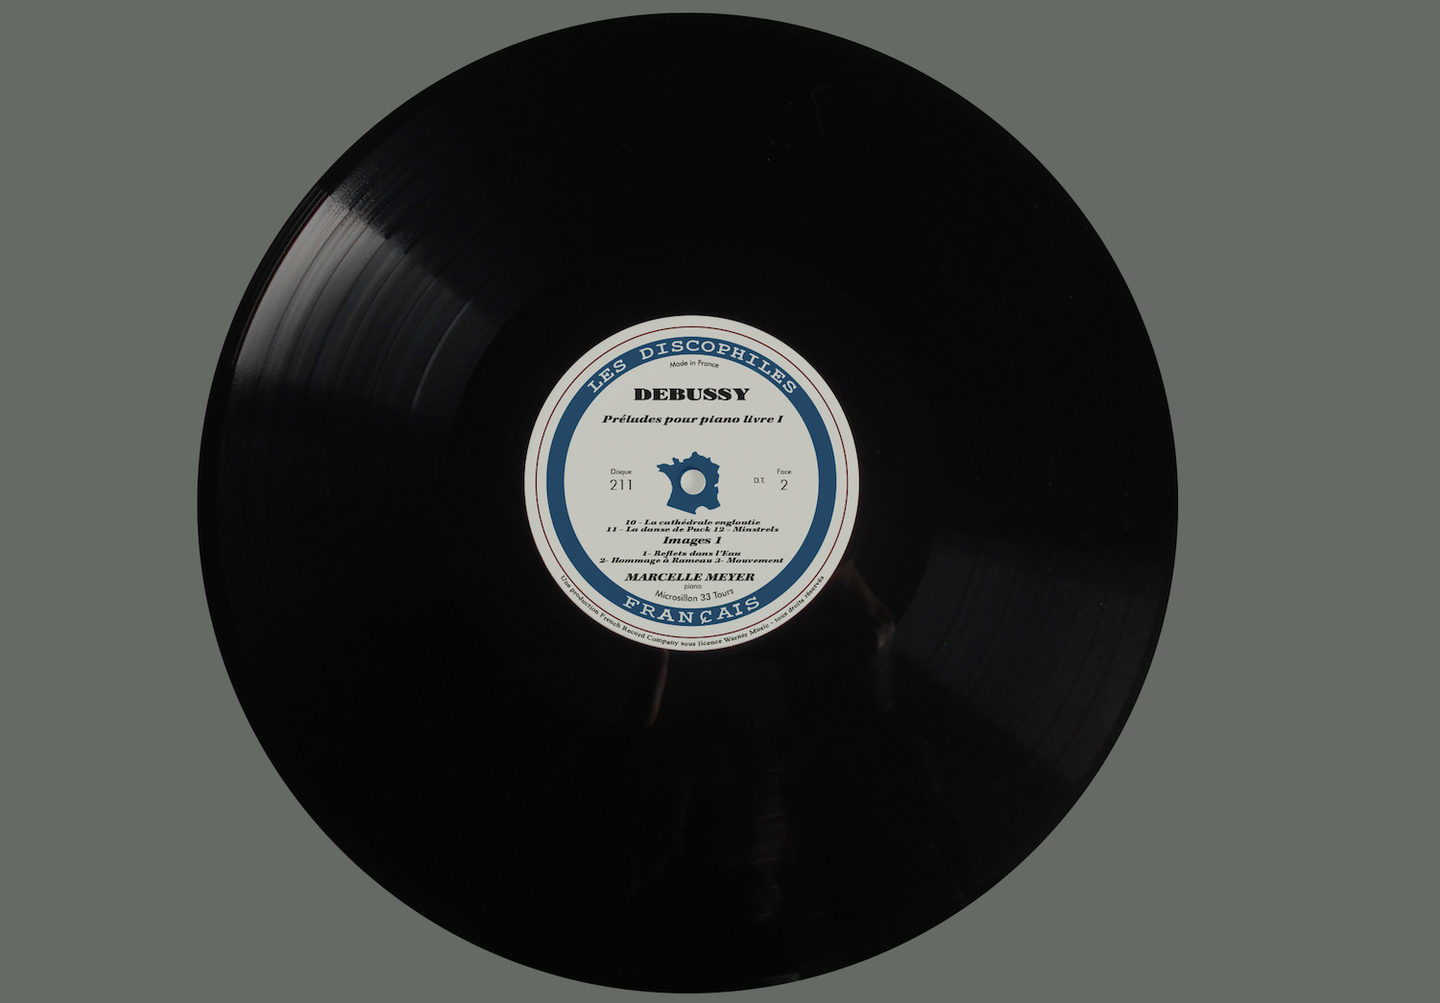 Машин рекордс винил. Tennessee LP альбом. Пластинки record Company Dark Horse. Итальянские альбомы LP цена.